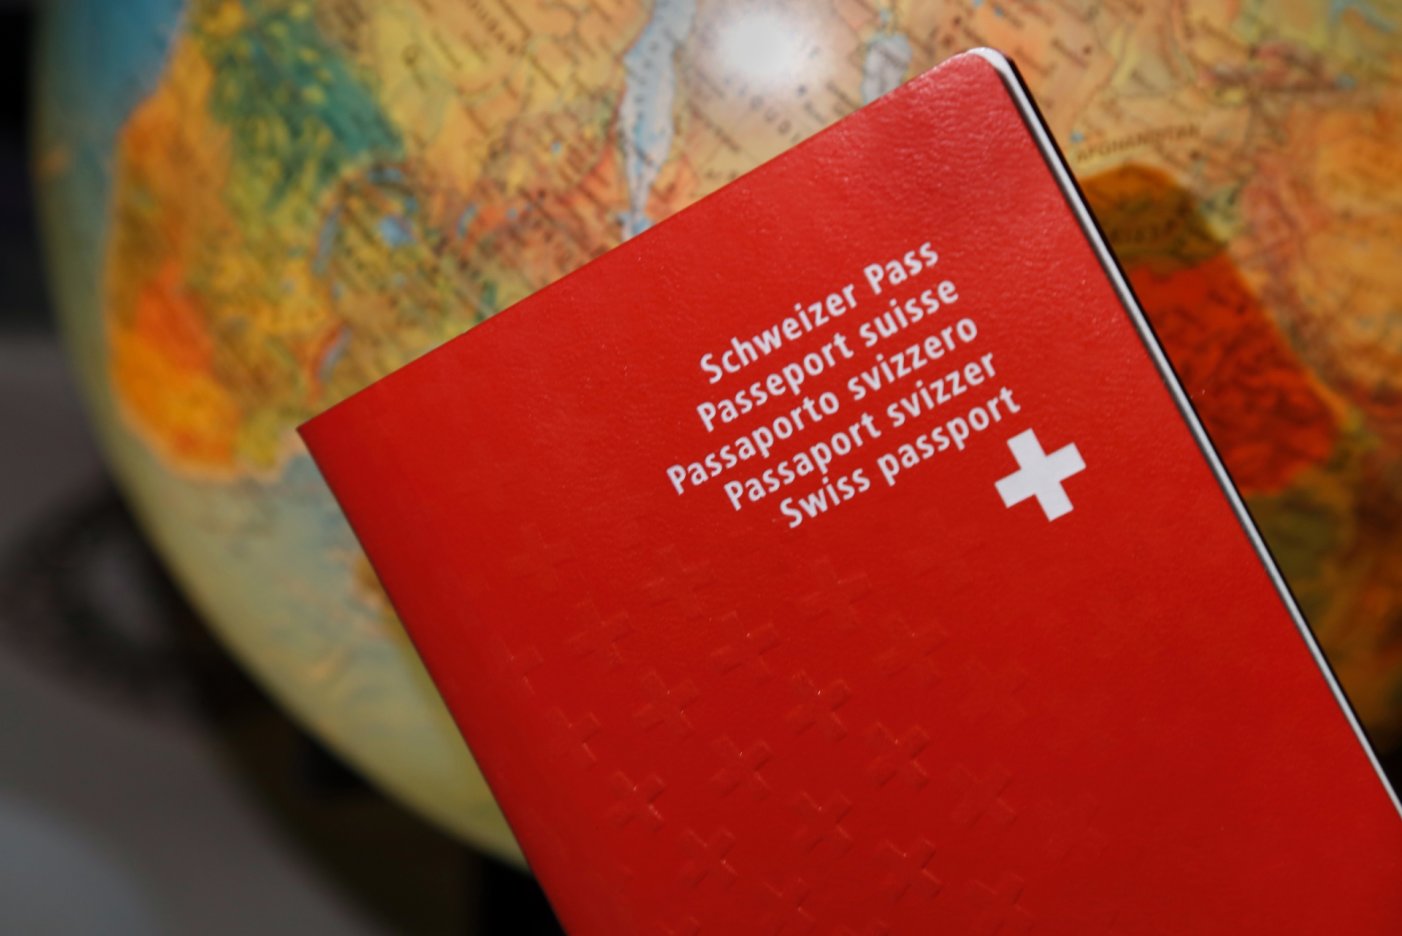 À l’approche des vacances d’été ou de Pâques, beaucoup de citoyens demandent ou renouvellent leur passeport ou leur carte d’identité.